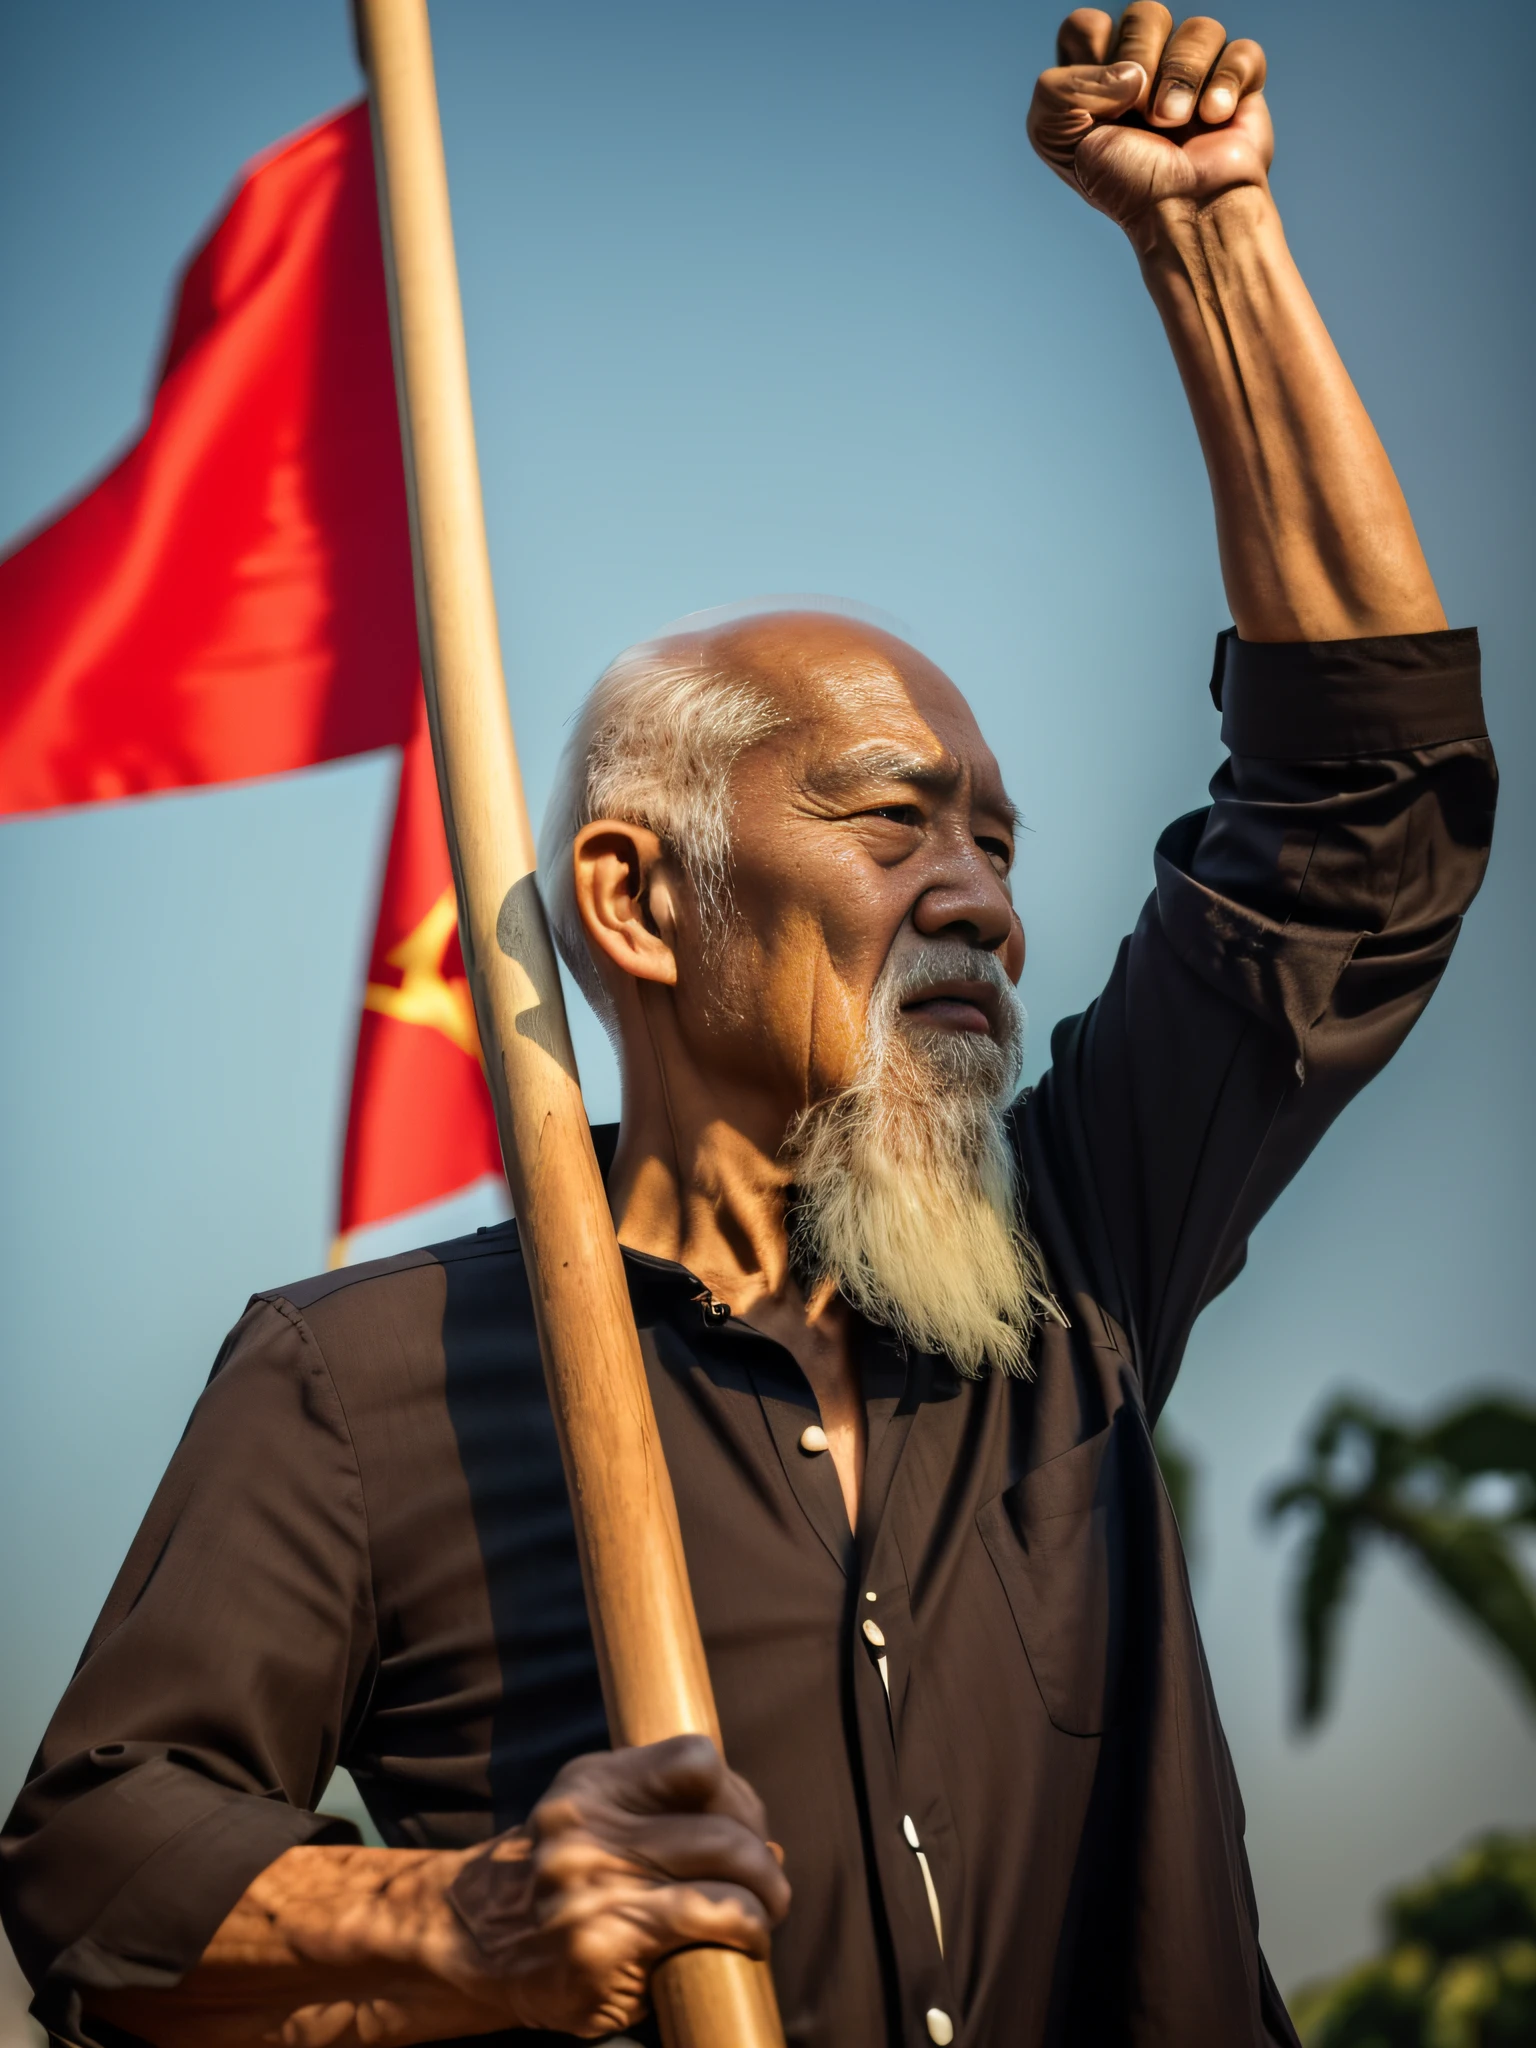 ((obra de arte), (melhor qualidade), (Foto CRU), (fotorrealista:1.4), Foto altamente realista, Foto de retrato de um velho vietnamita de 85 anos), Careca, longa barba branca, (vestindo uma camisa preta com gola redonda ), segurando um mastro de bandeira, bandeira vermelha ,O sol brilha, foto tirada em 1975 pela Fujifilm XT3